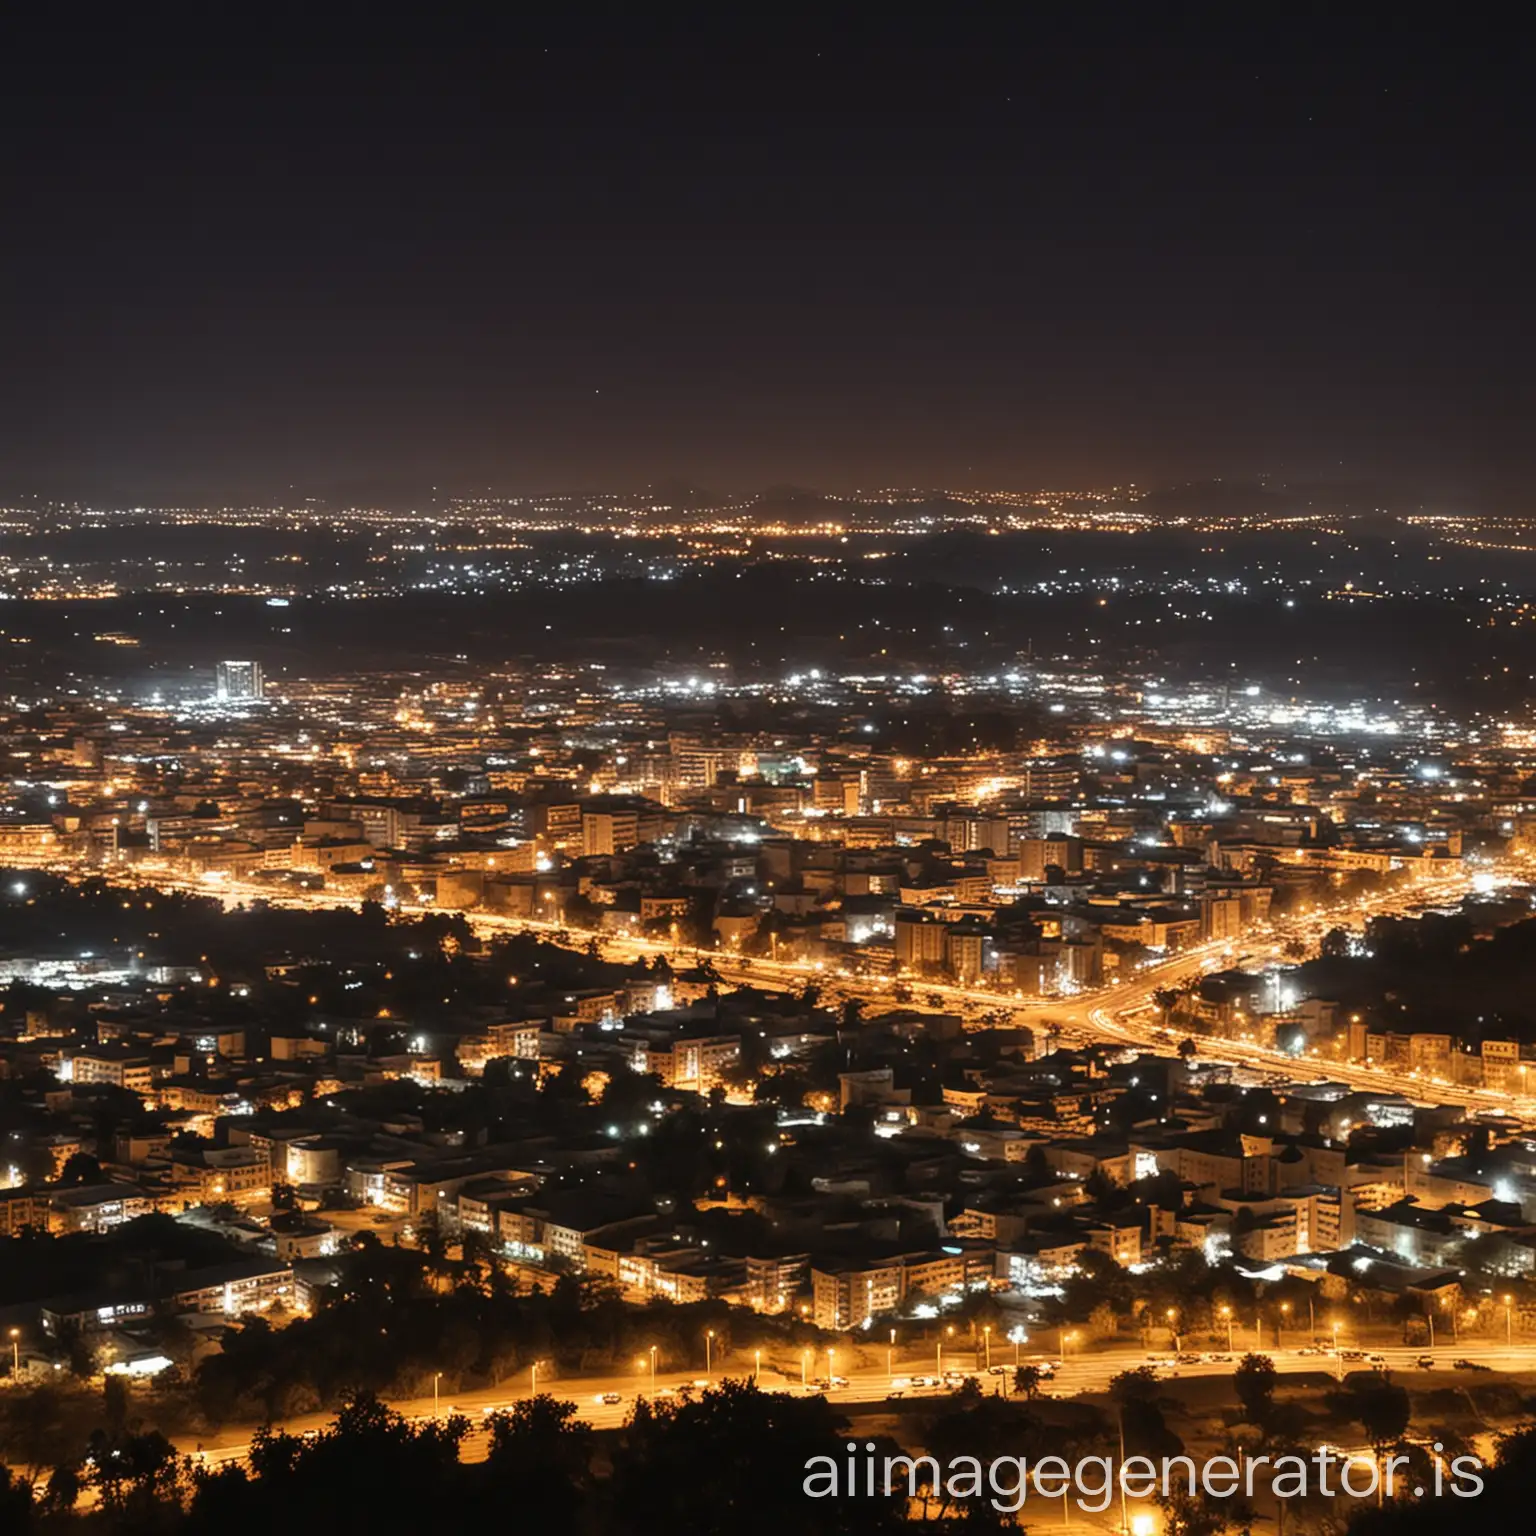 Mekele-City-at-Night-Urban-Landscape-with-Illuminated-Cityscape